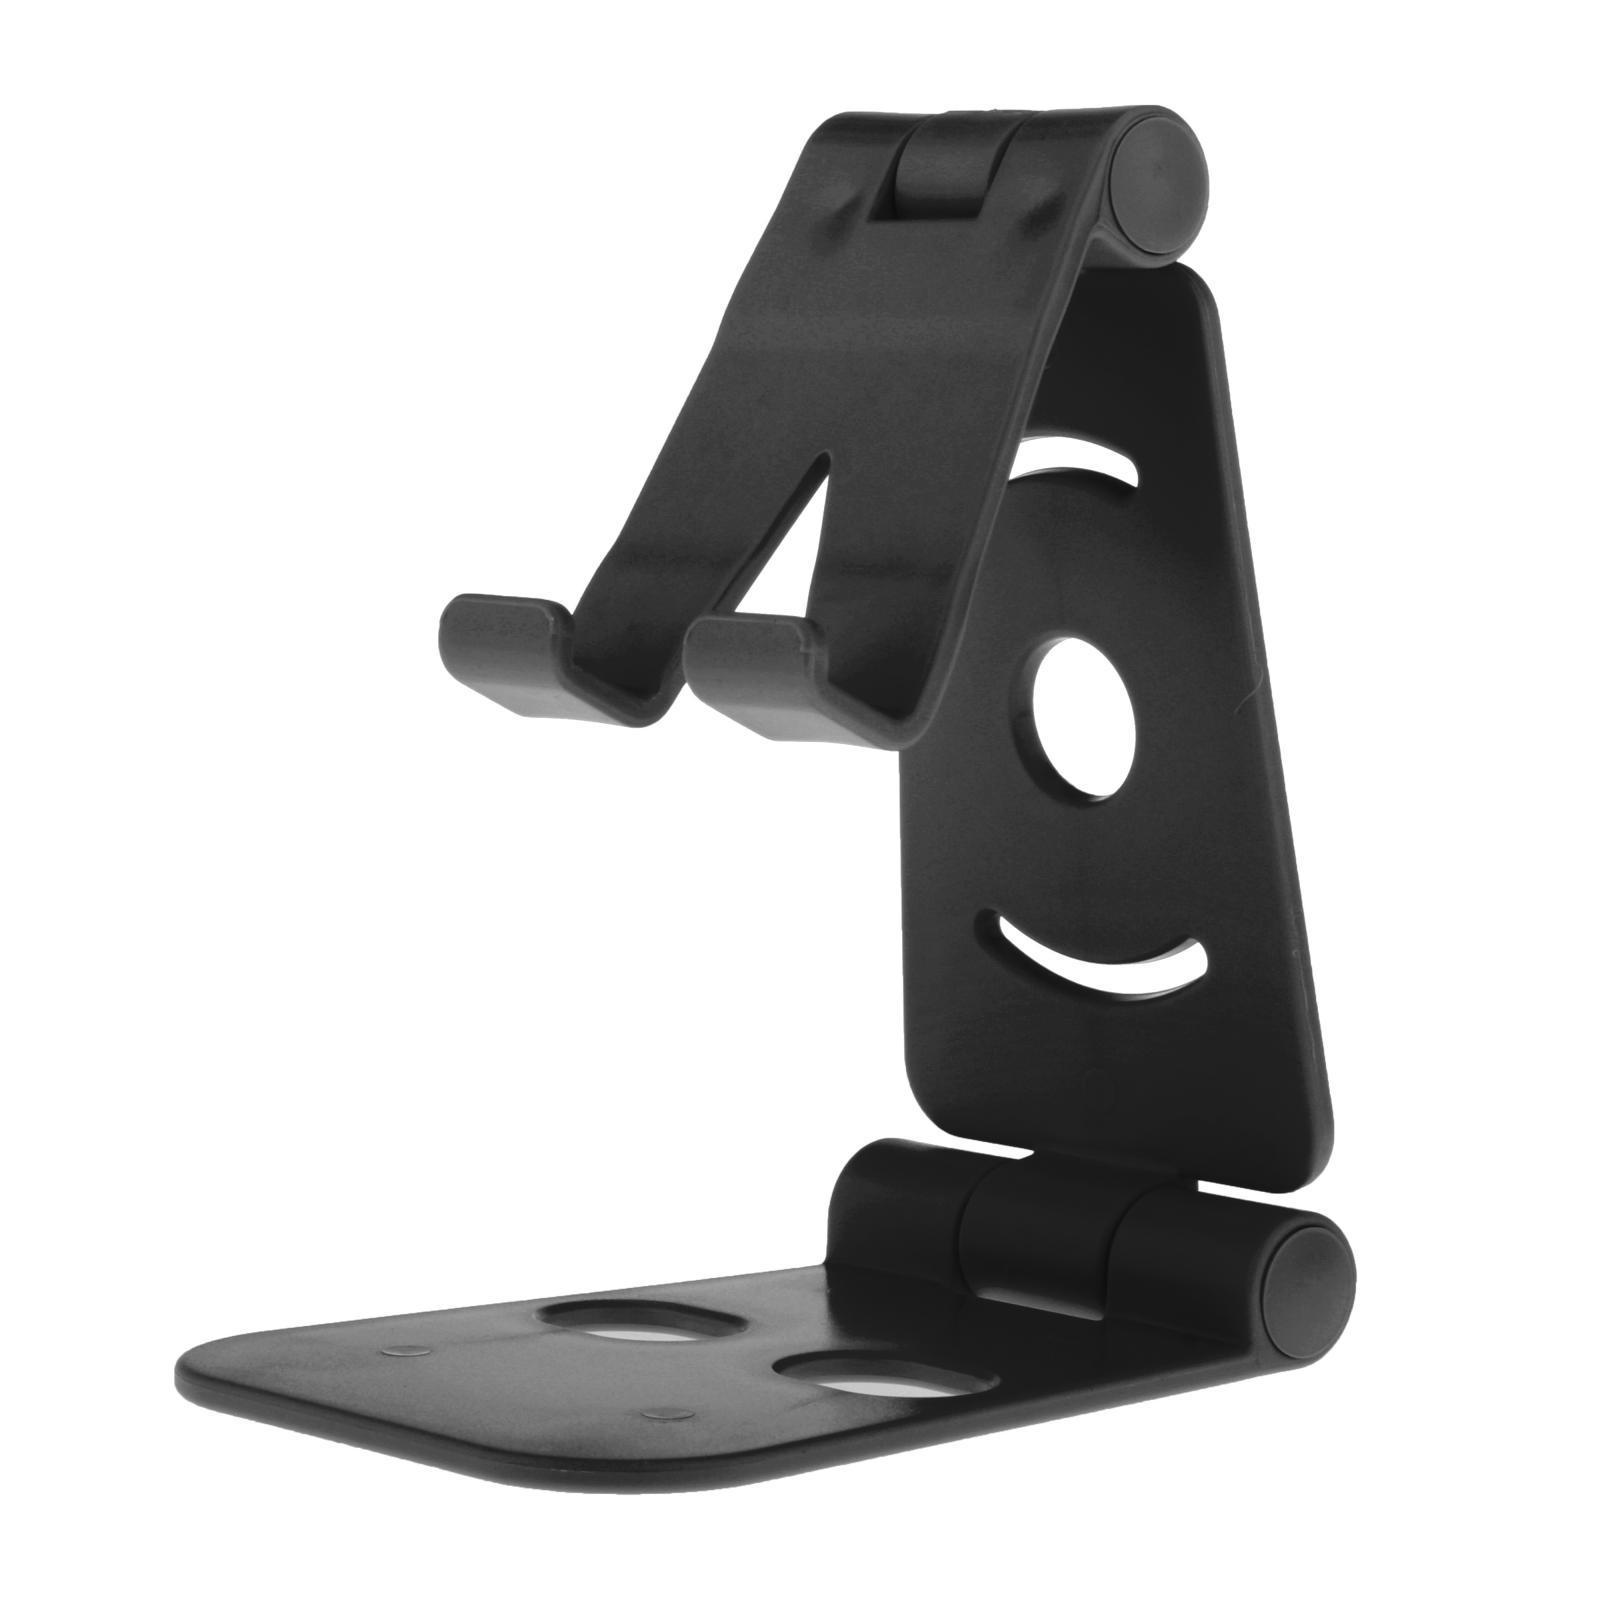 Universal Cell Phone Tablet Desktop Stand Desk Holder Mount